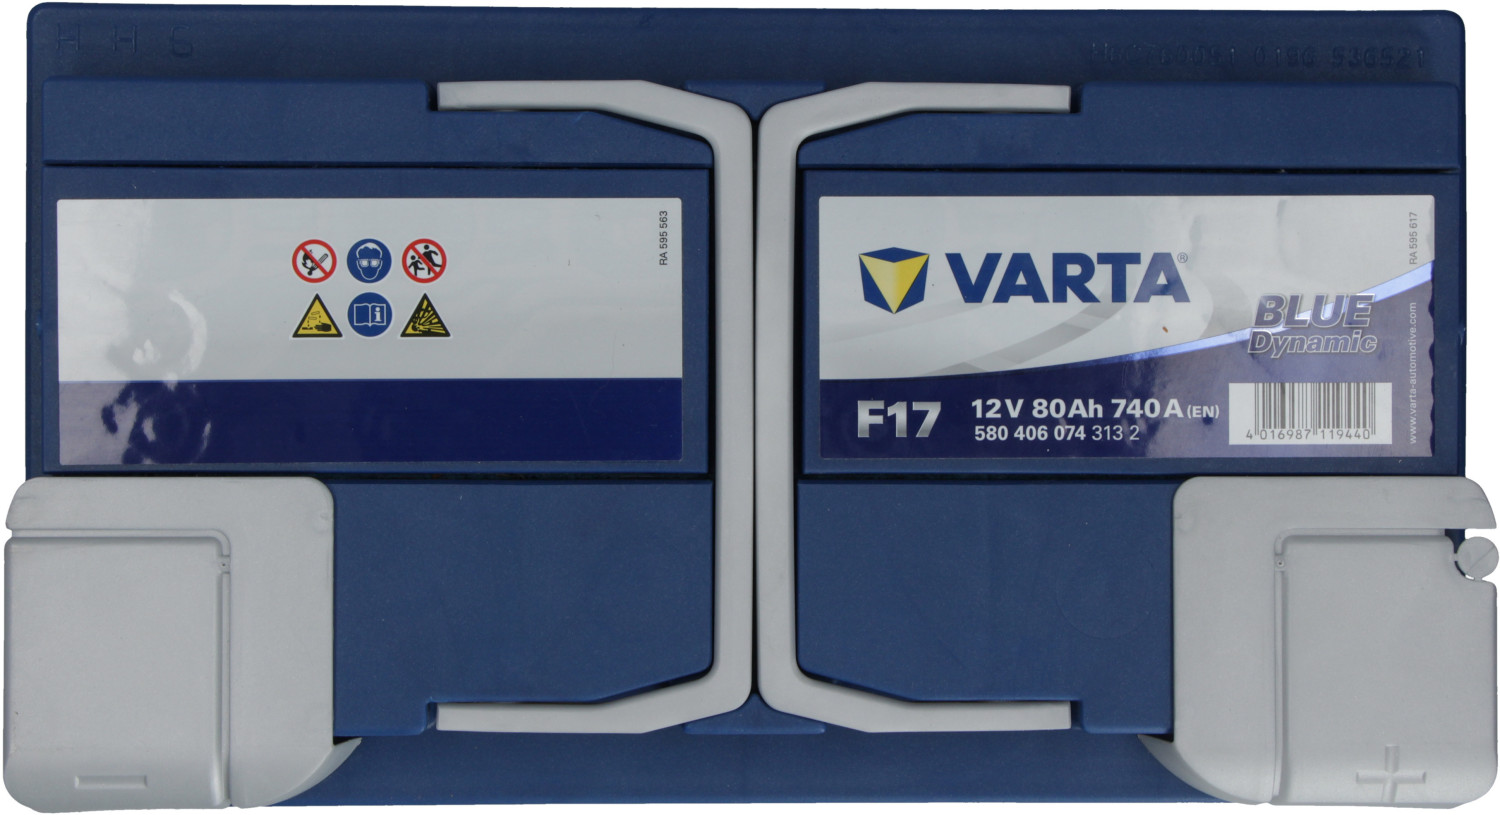 VARTA Blue Dynamic 12V 95Ah G3 ab 102,06 € (Februar 2024 Preise)